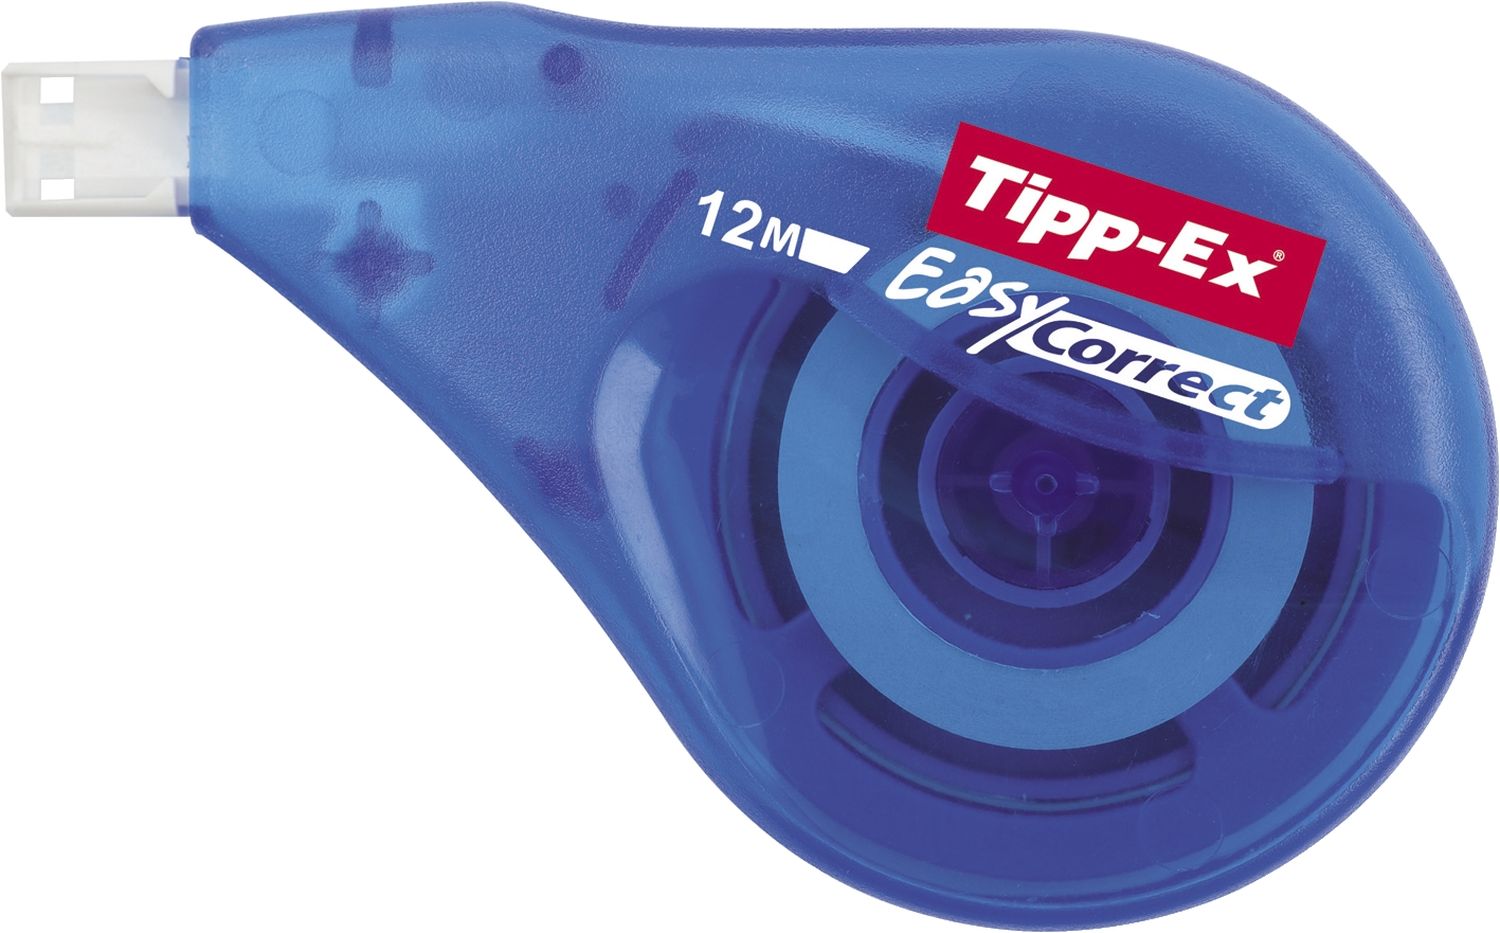 Korrekturroller Tipp-Ex Easy Correct 8290352, Einwegroller, (BxL) 4,2 mm x 12 m